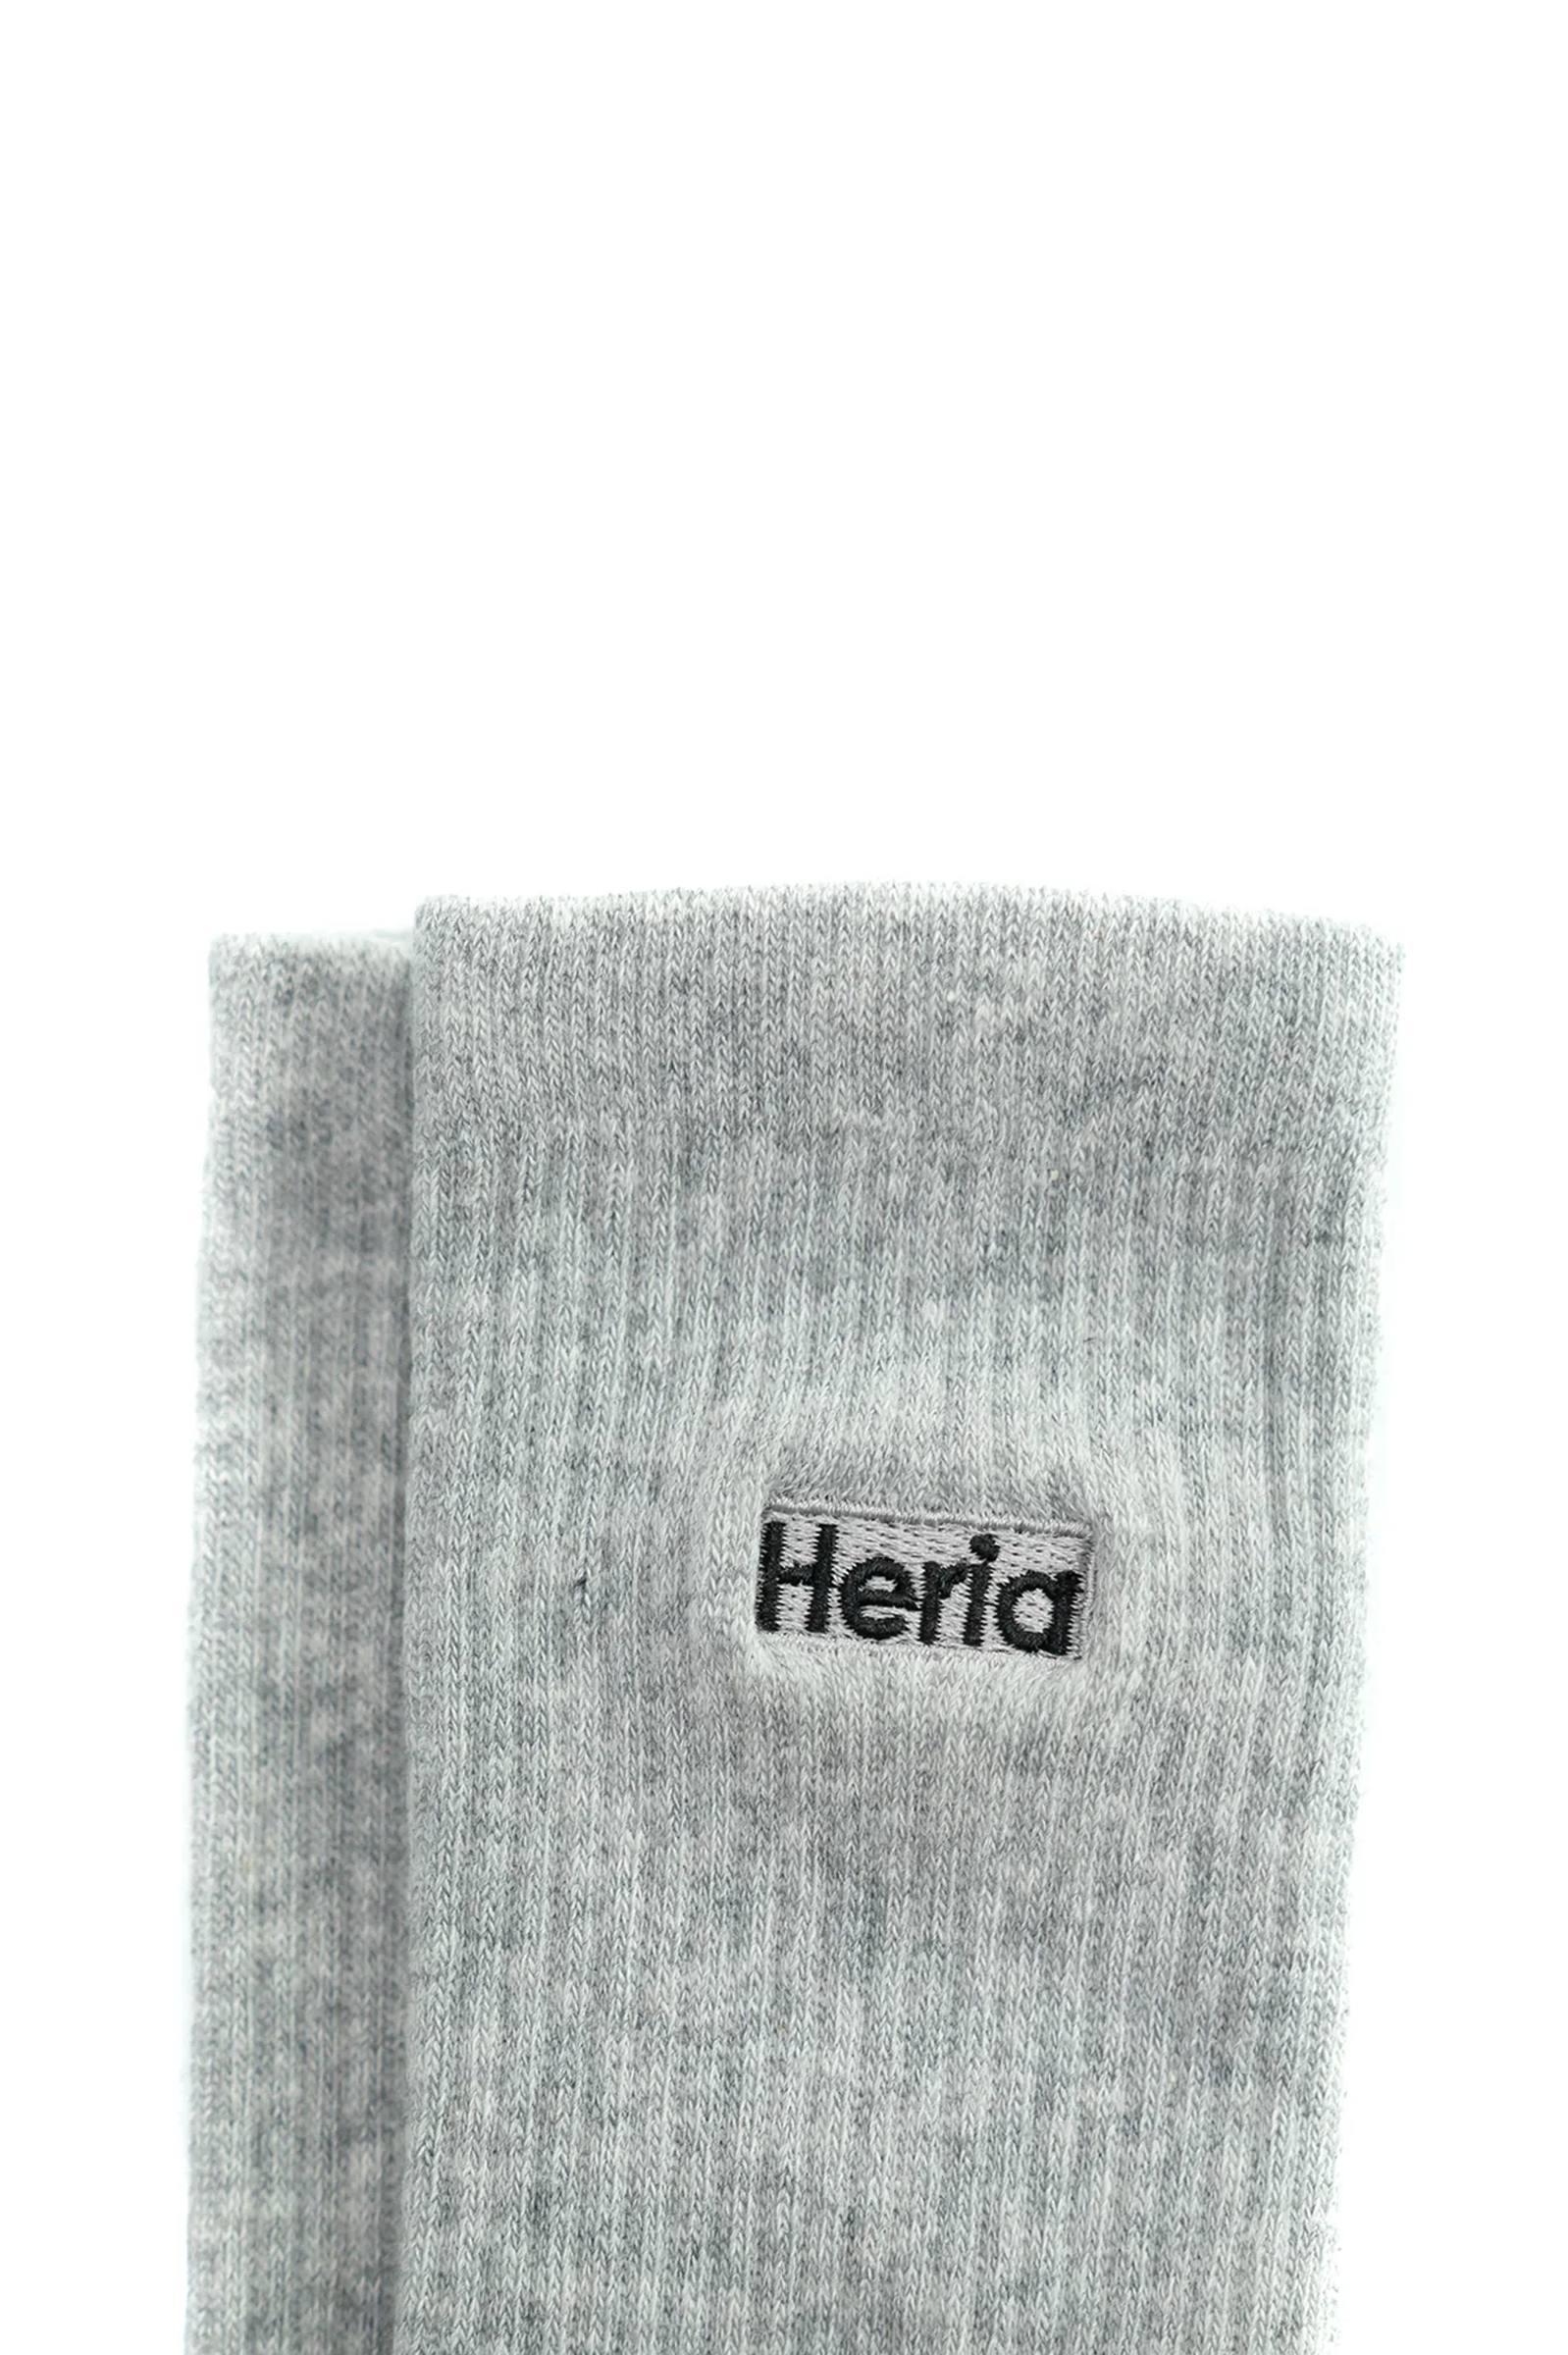 Heria Socks - Grey